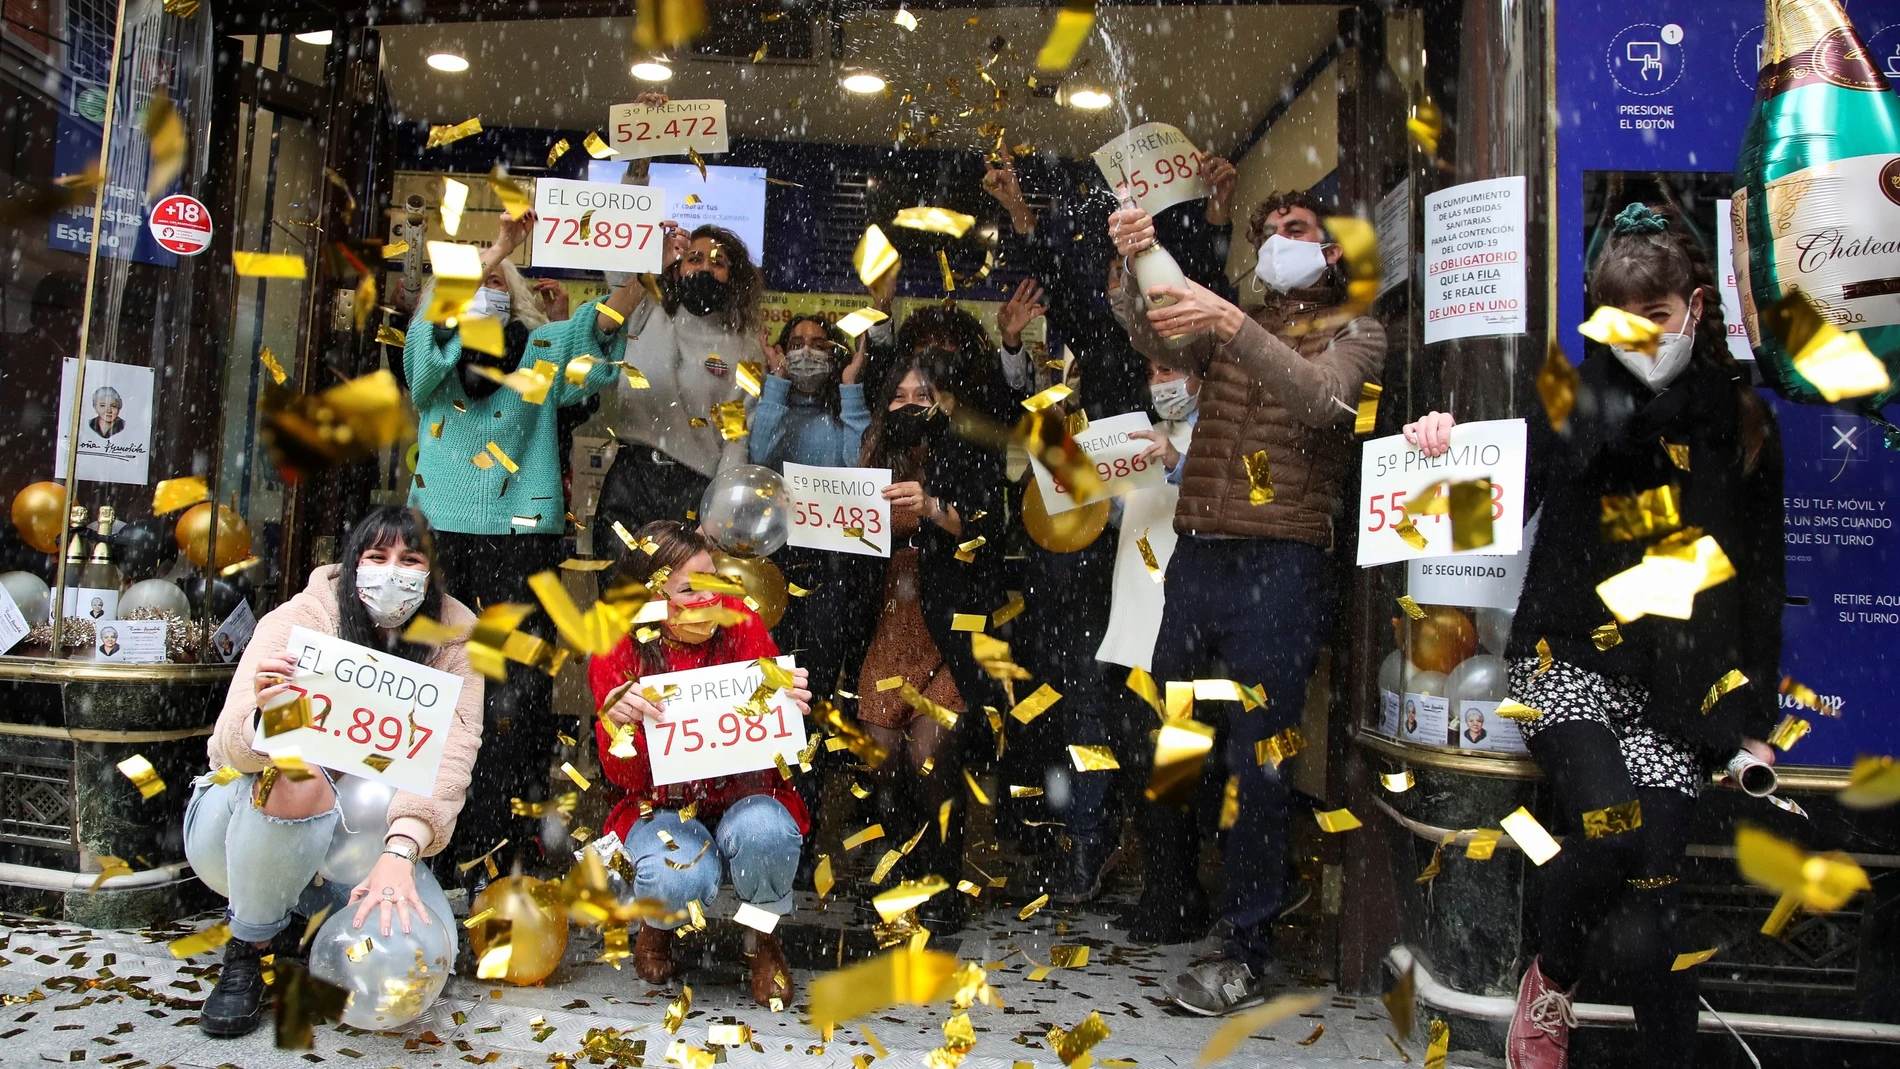 Loteros de la administración de "Doña Manolita" de Madrid festejan haber vendido décimos del premio gordo que ha recaído en el número 72.897